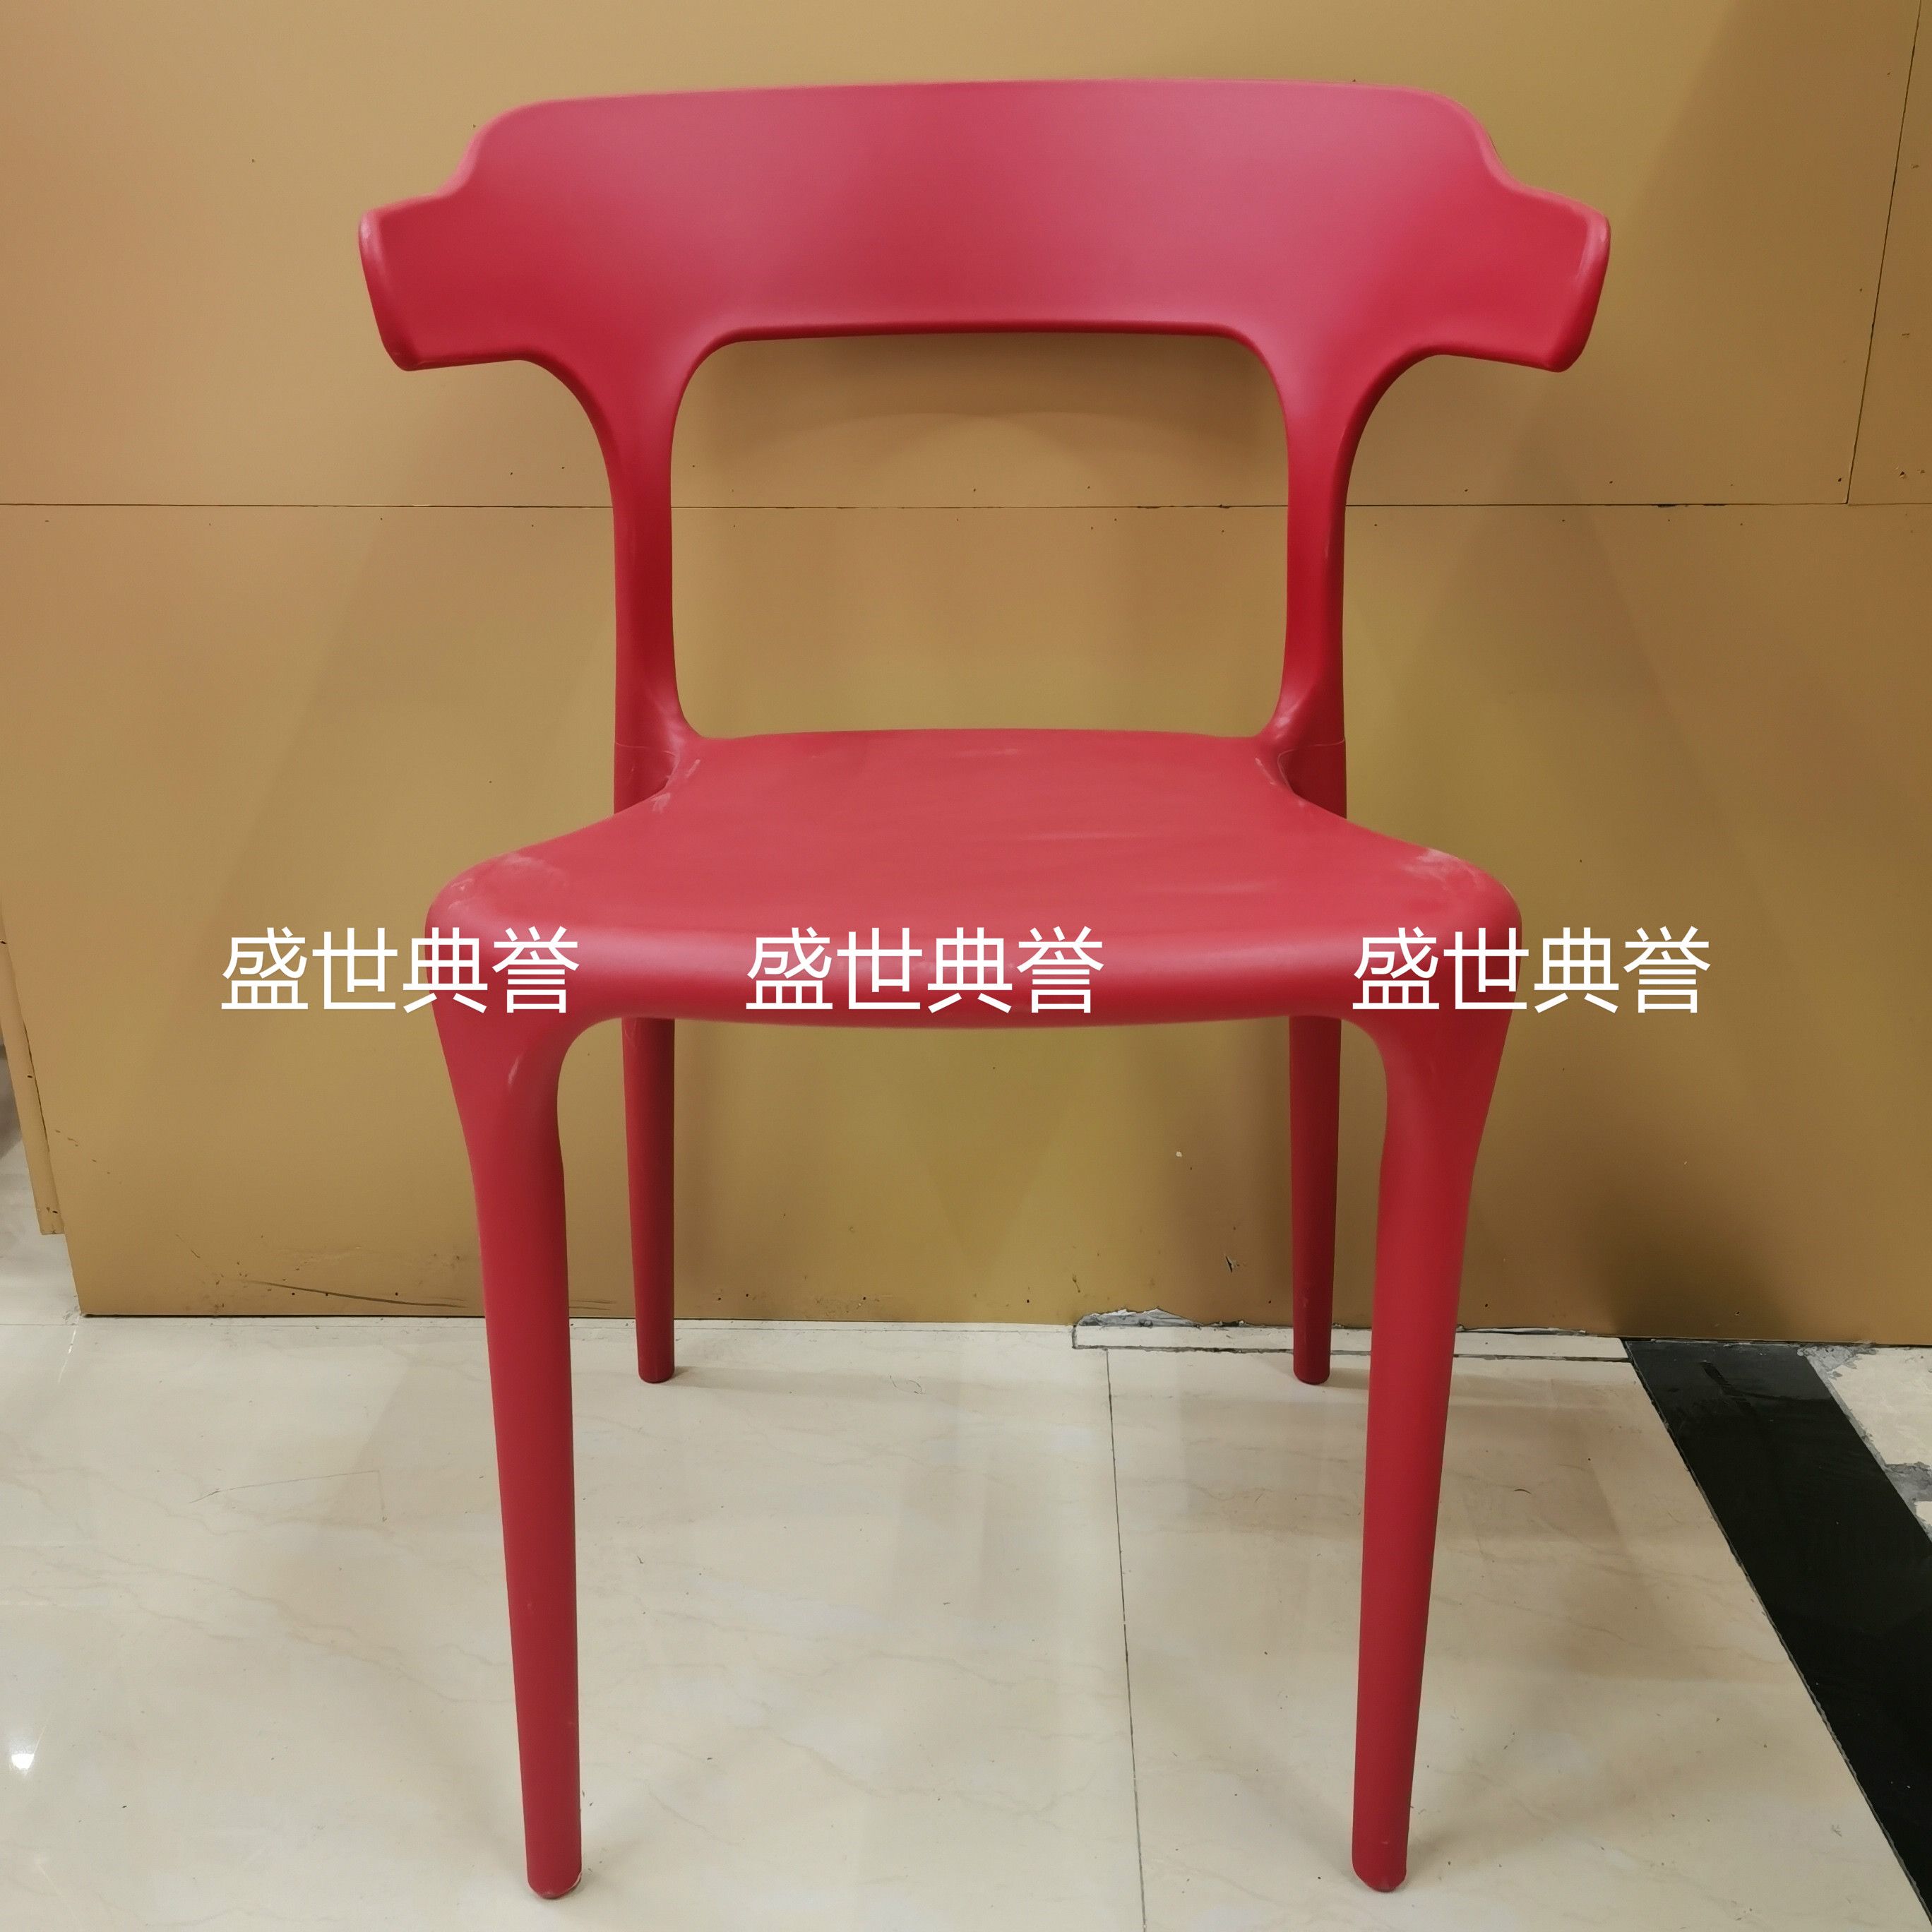 广州外贸批发户外婚礼椅子婚庆塑料折叠椅主题餐厅北欧时尚餐椅产品图